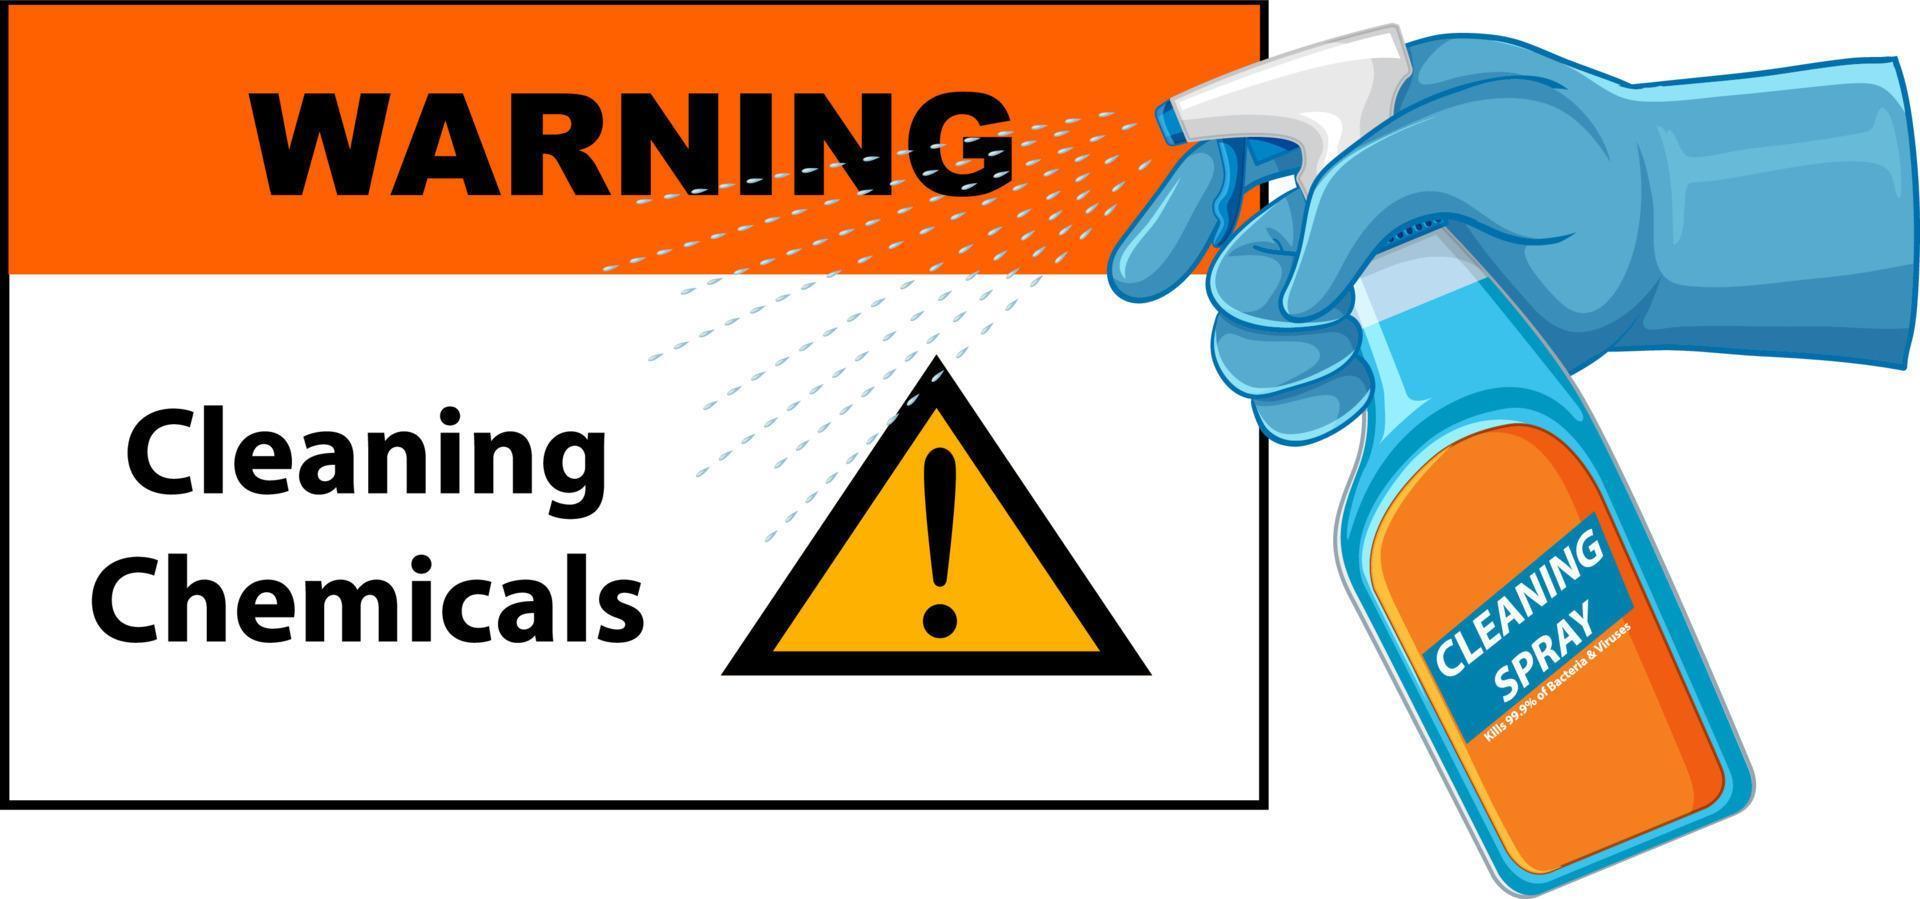 ein warnzeichen für reinigungschemikalien mit menschlicher hand, die spay hält vektor